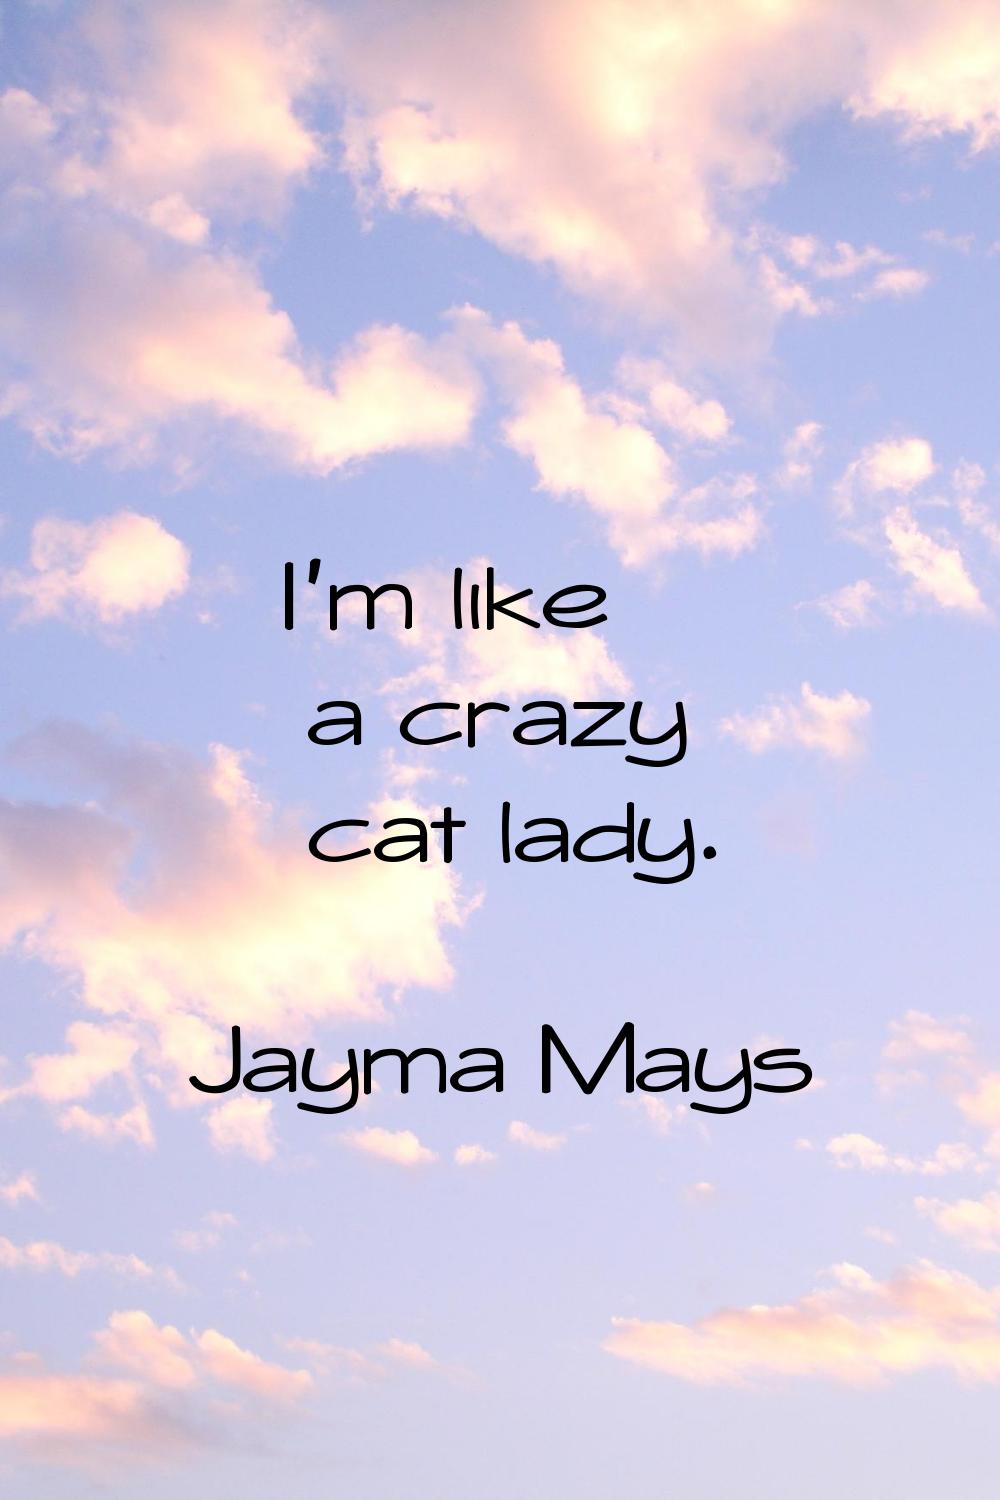 I'm like a crazy cat lady.